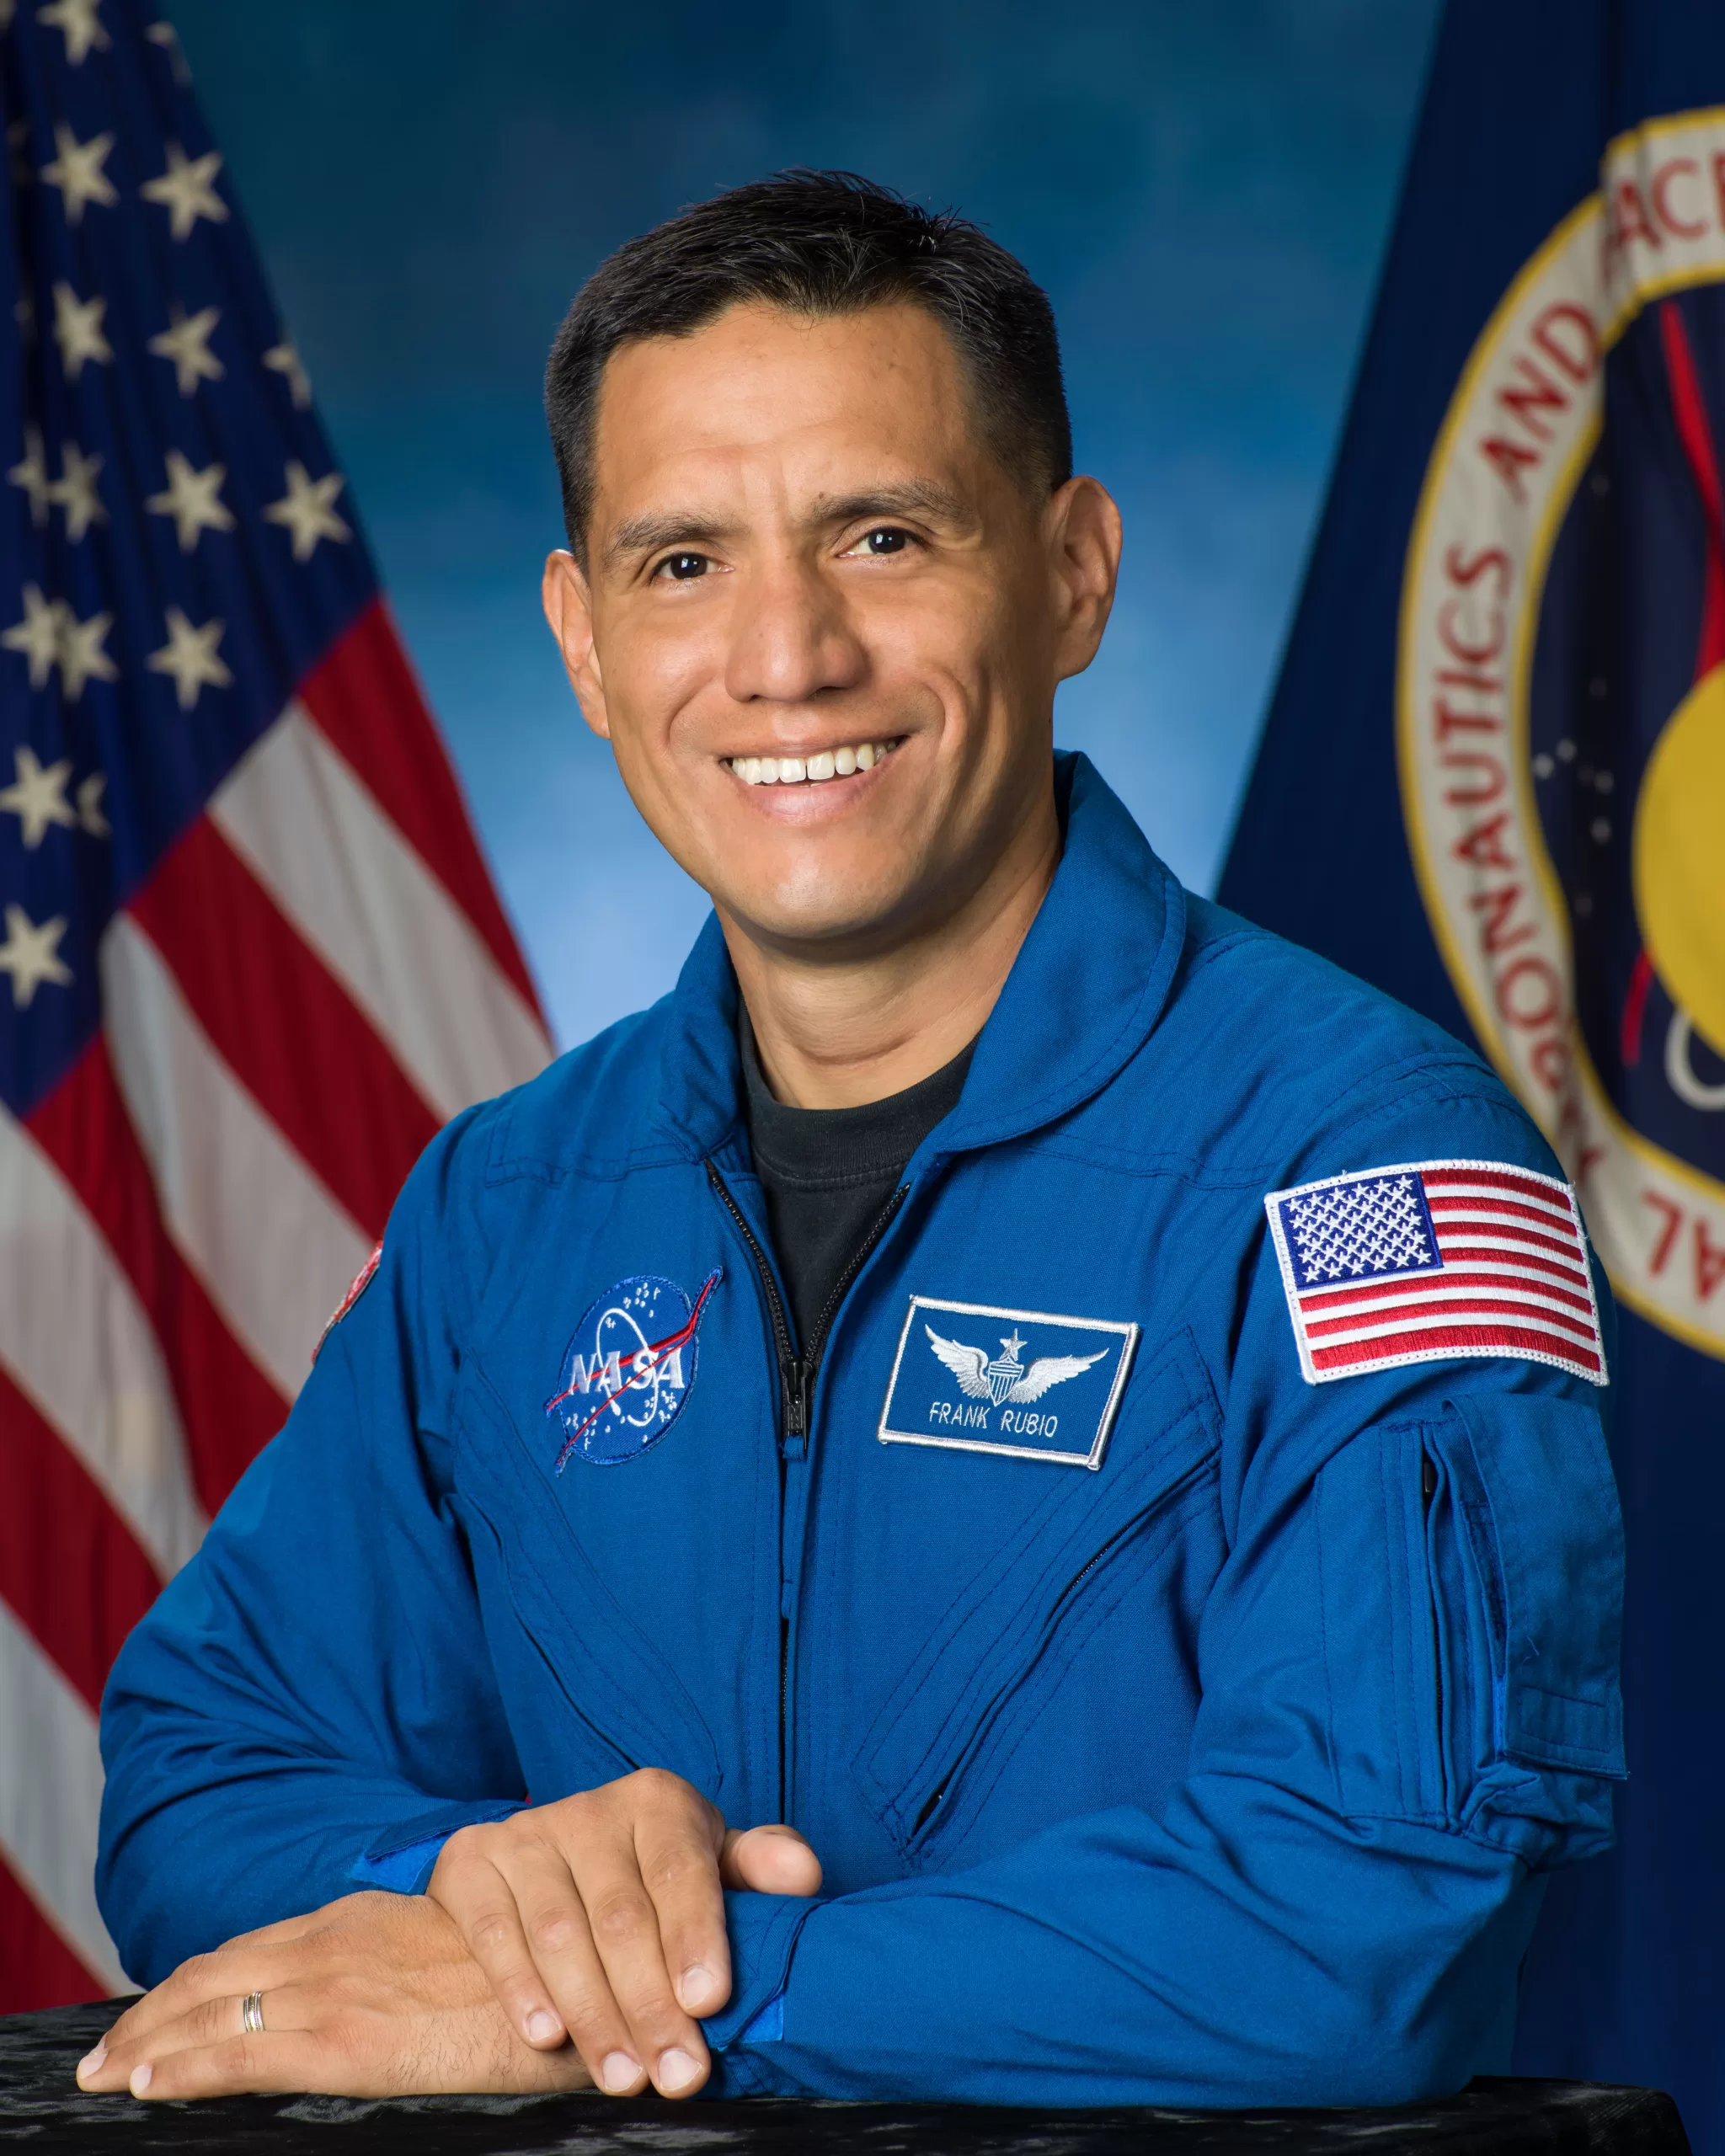 . NASA uzayda en uzun süre kalan astronotun 355 günle Frank Rubio olduğunu duyurdu.